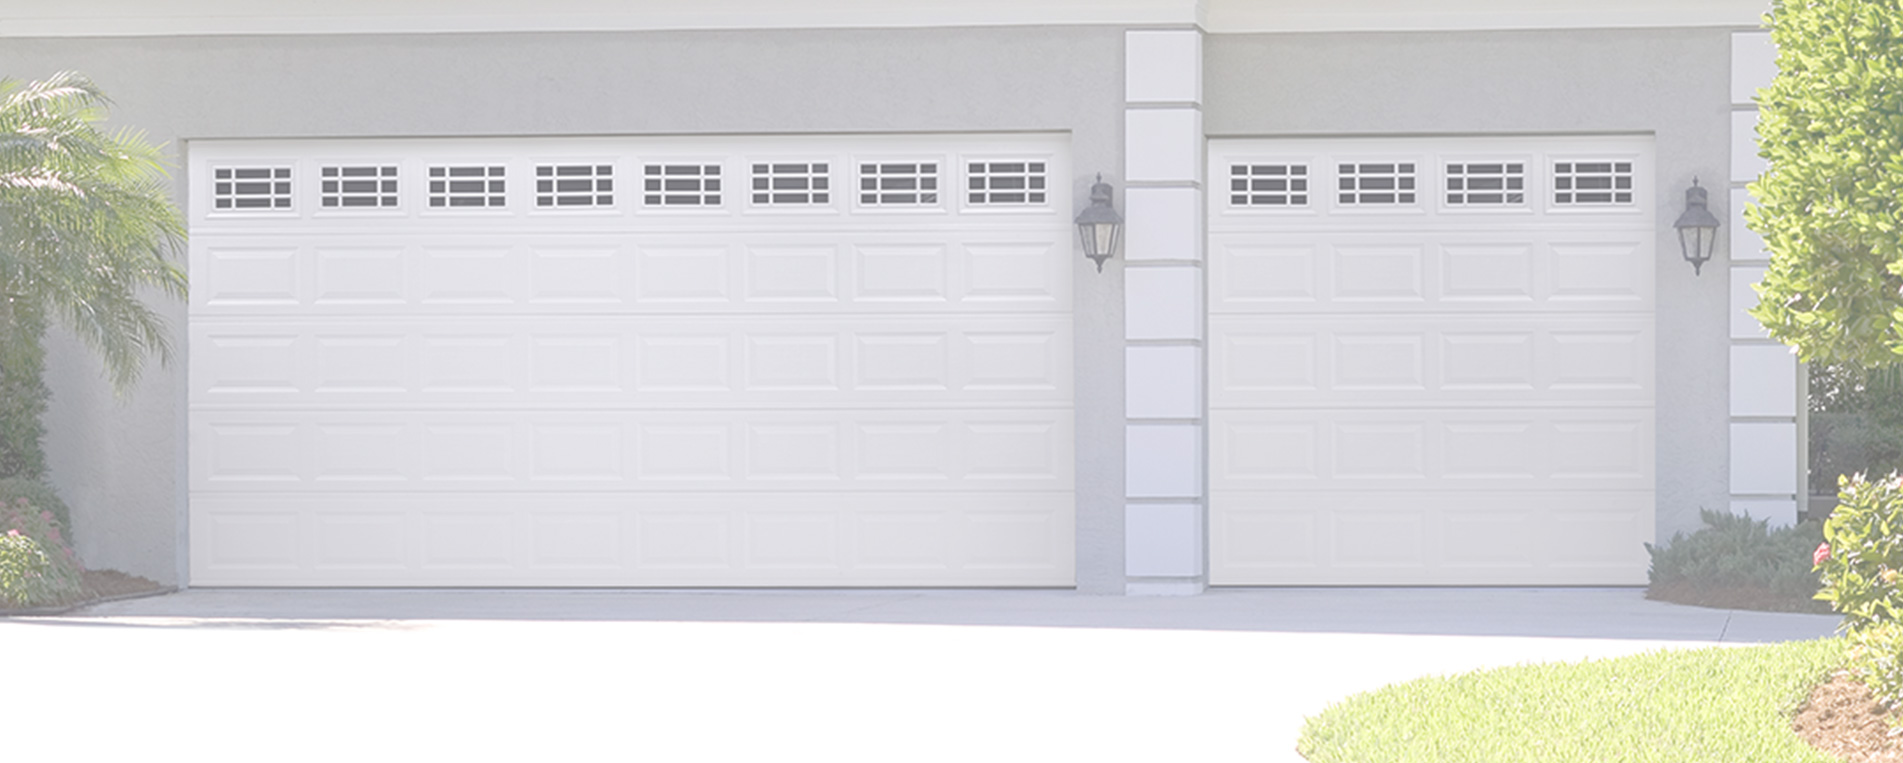 The Convenience of Using Garage Door Openers